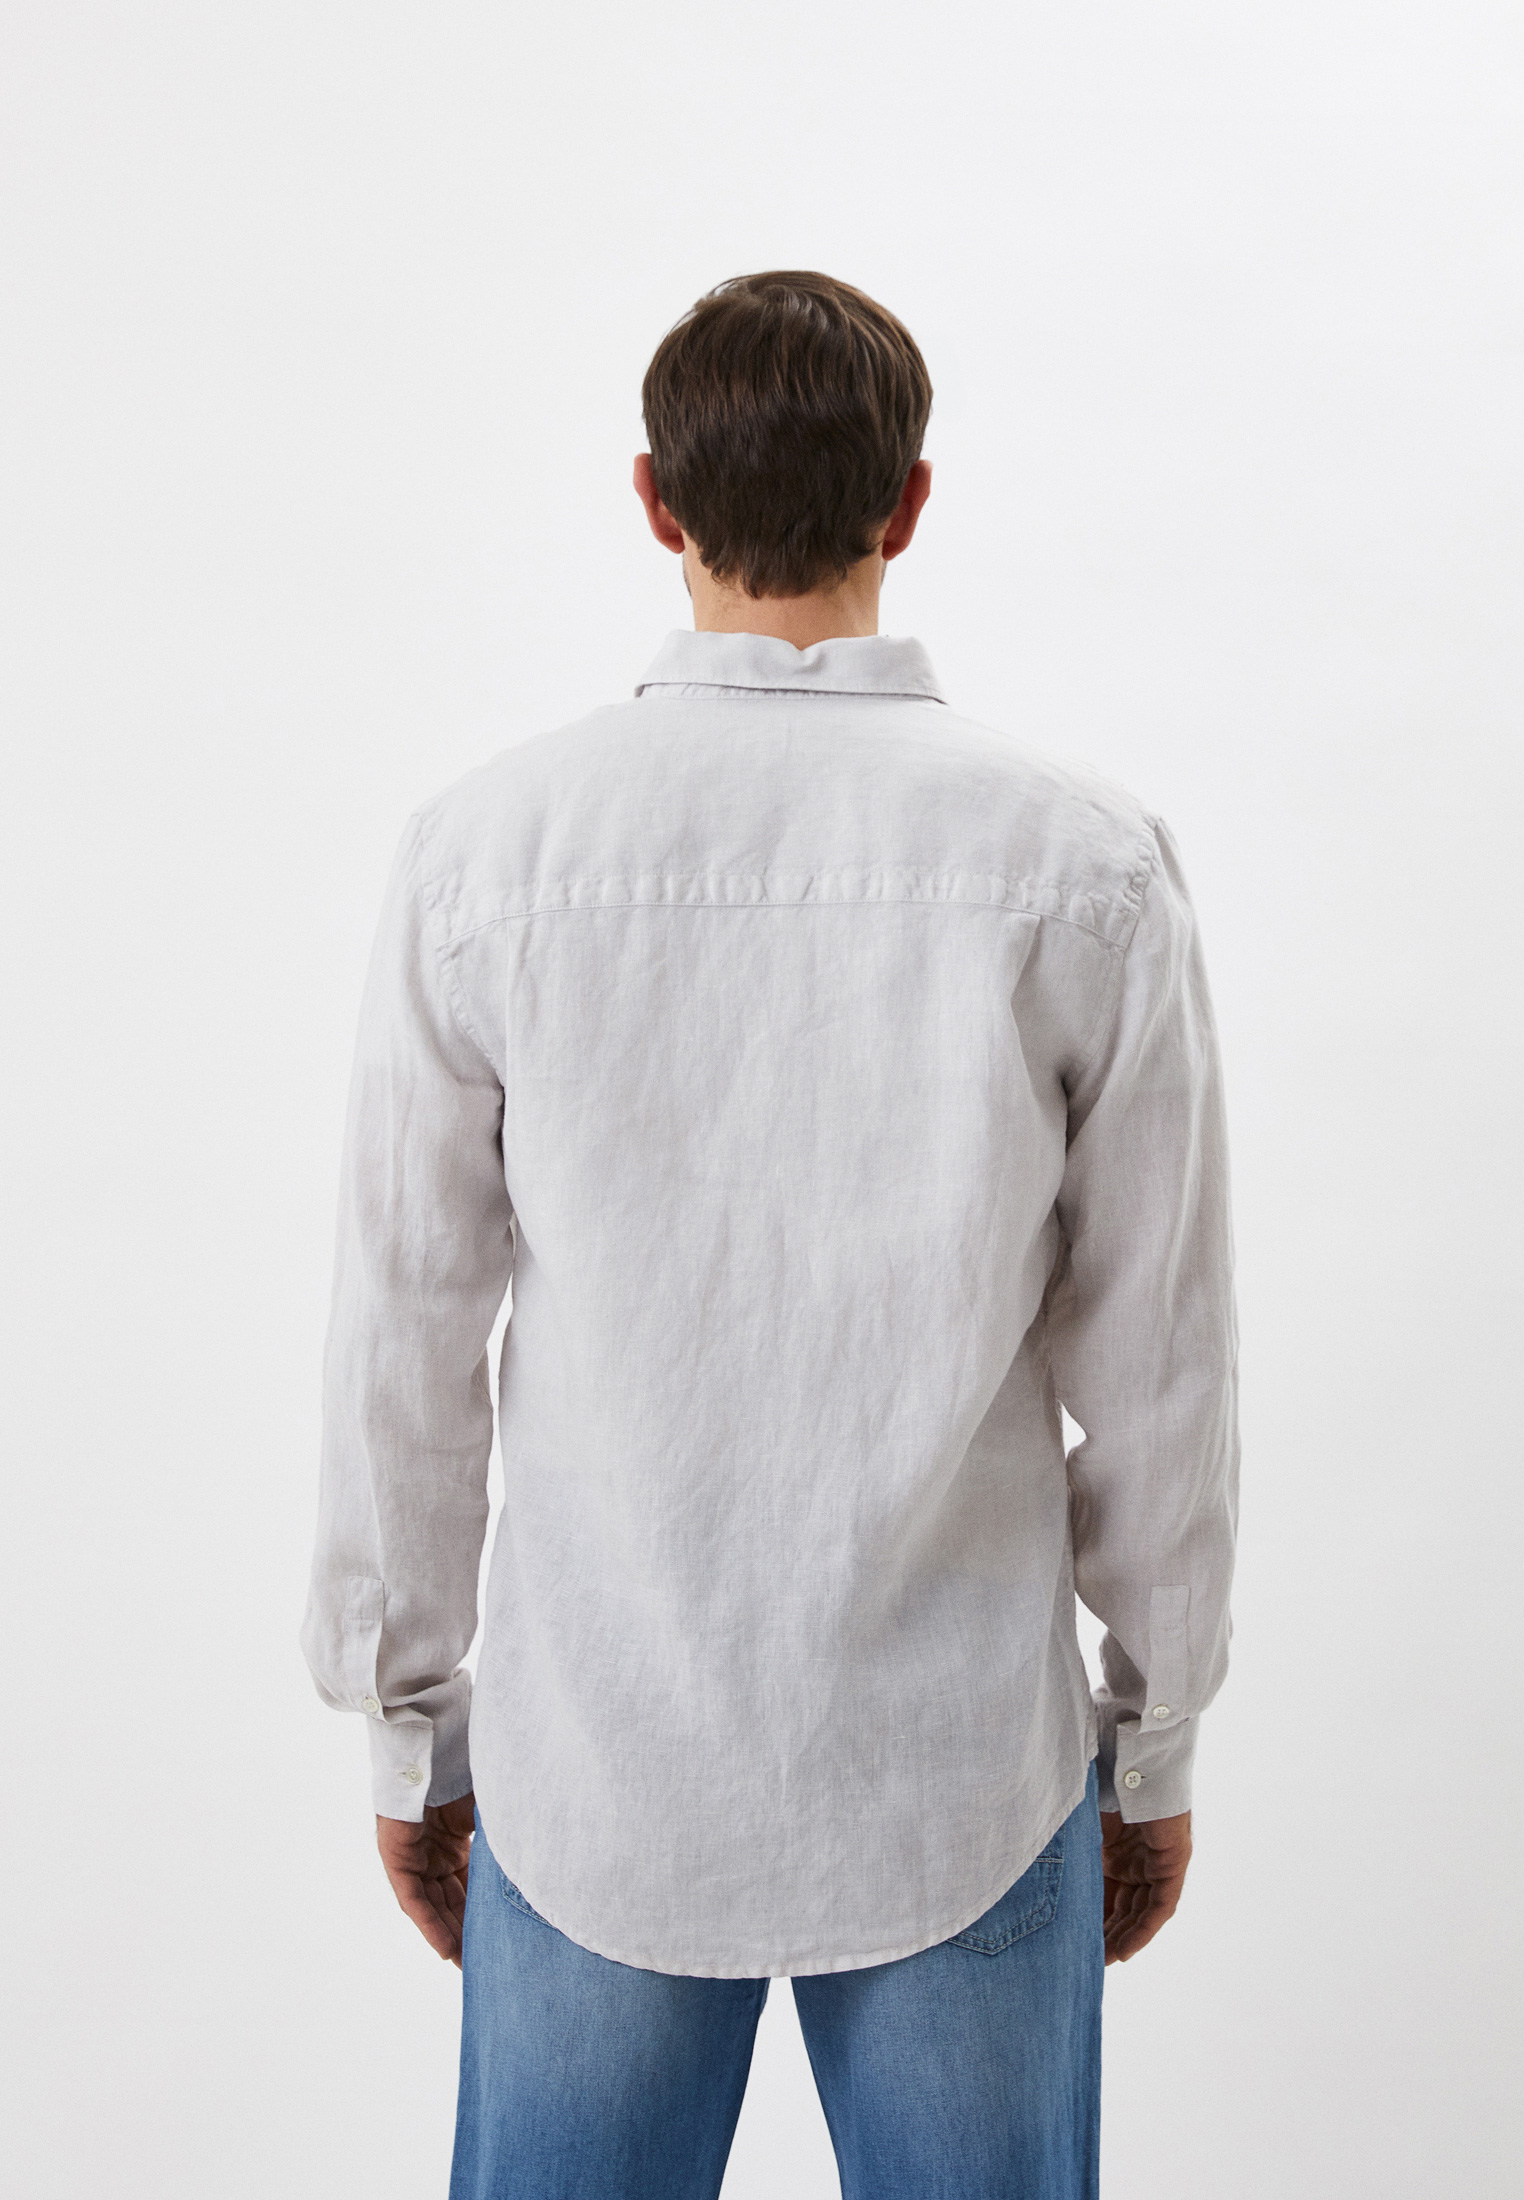 Рубашка с длинным рукавом Bikkembergs (Биккембергс) CC12301T349A: изображение 3